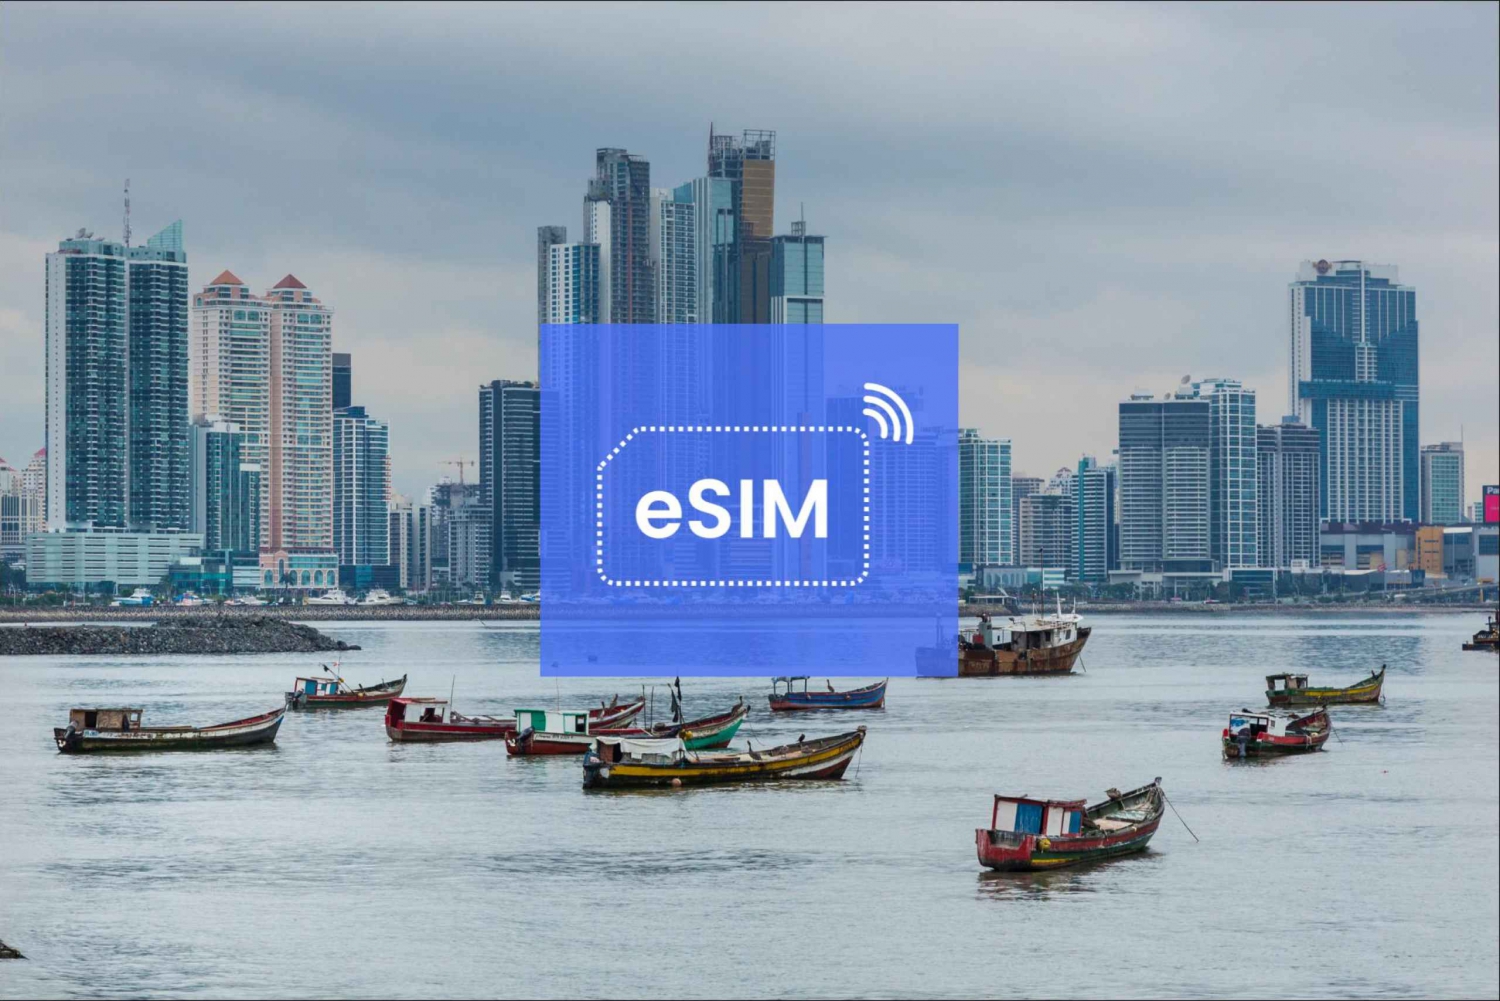 Ciudad de Panamá: Panamá eSIM Roaming Plan de Datos Móviles